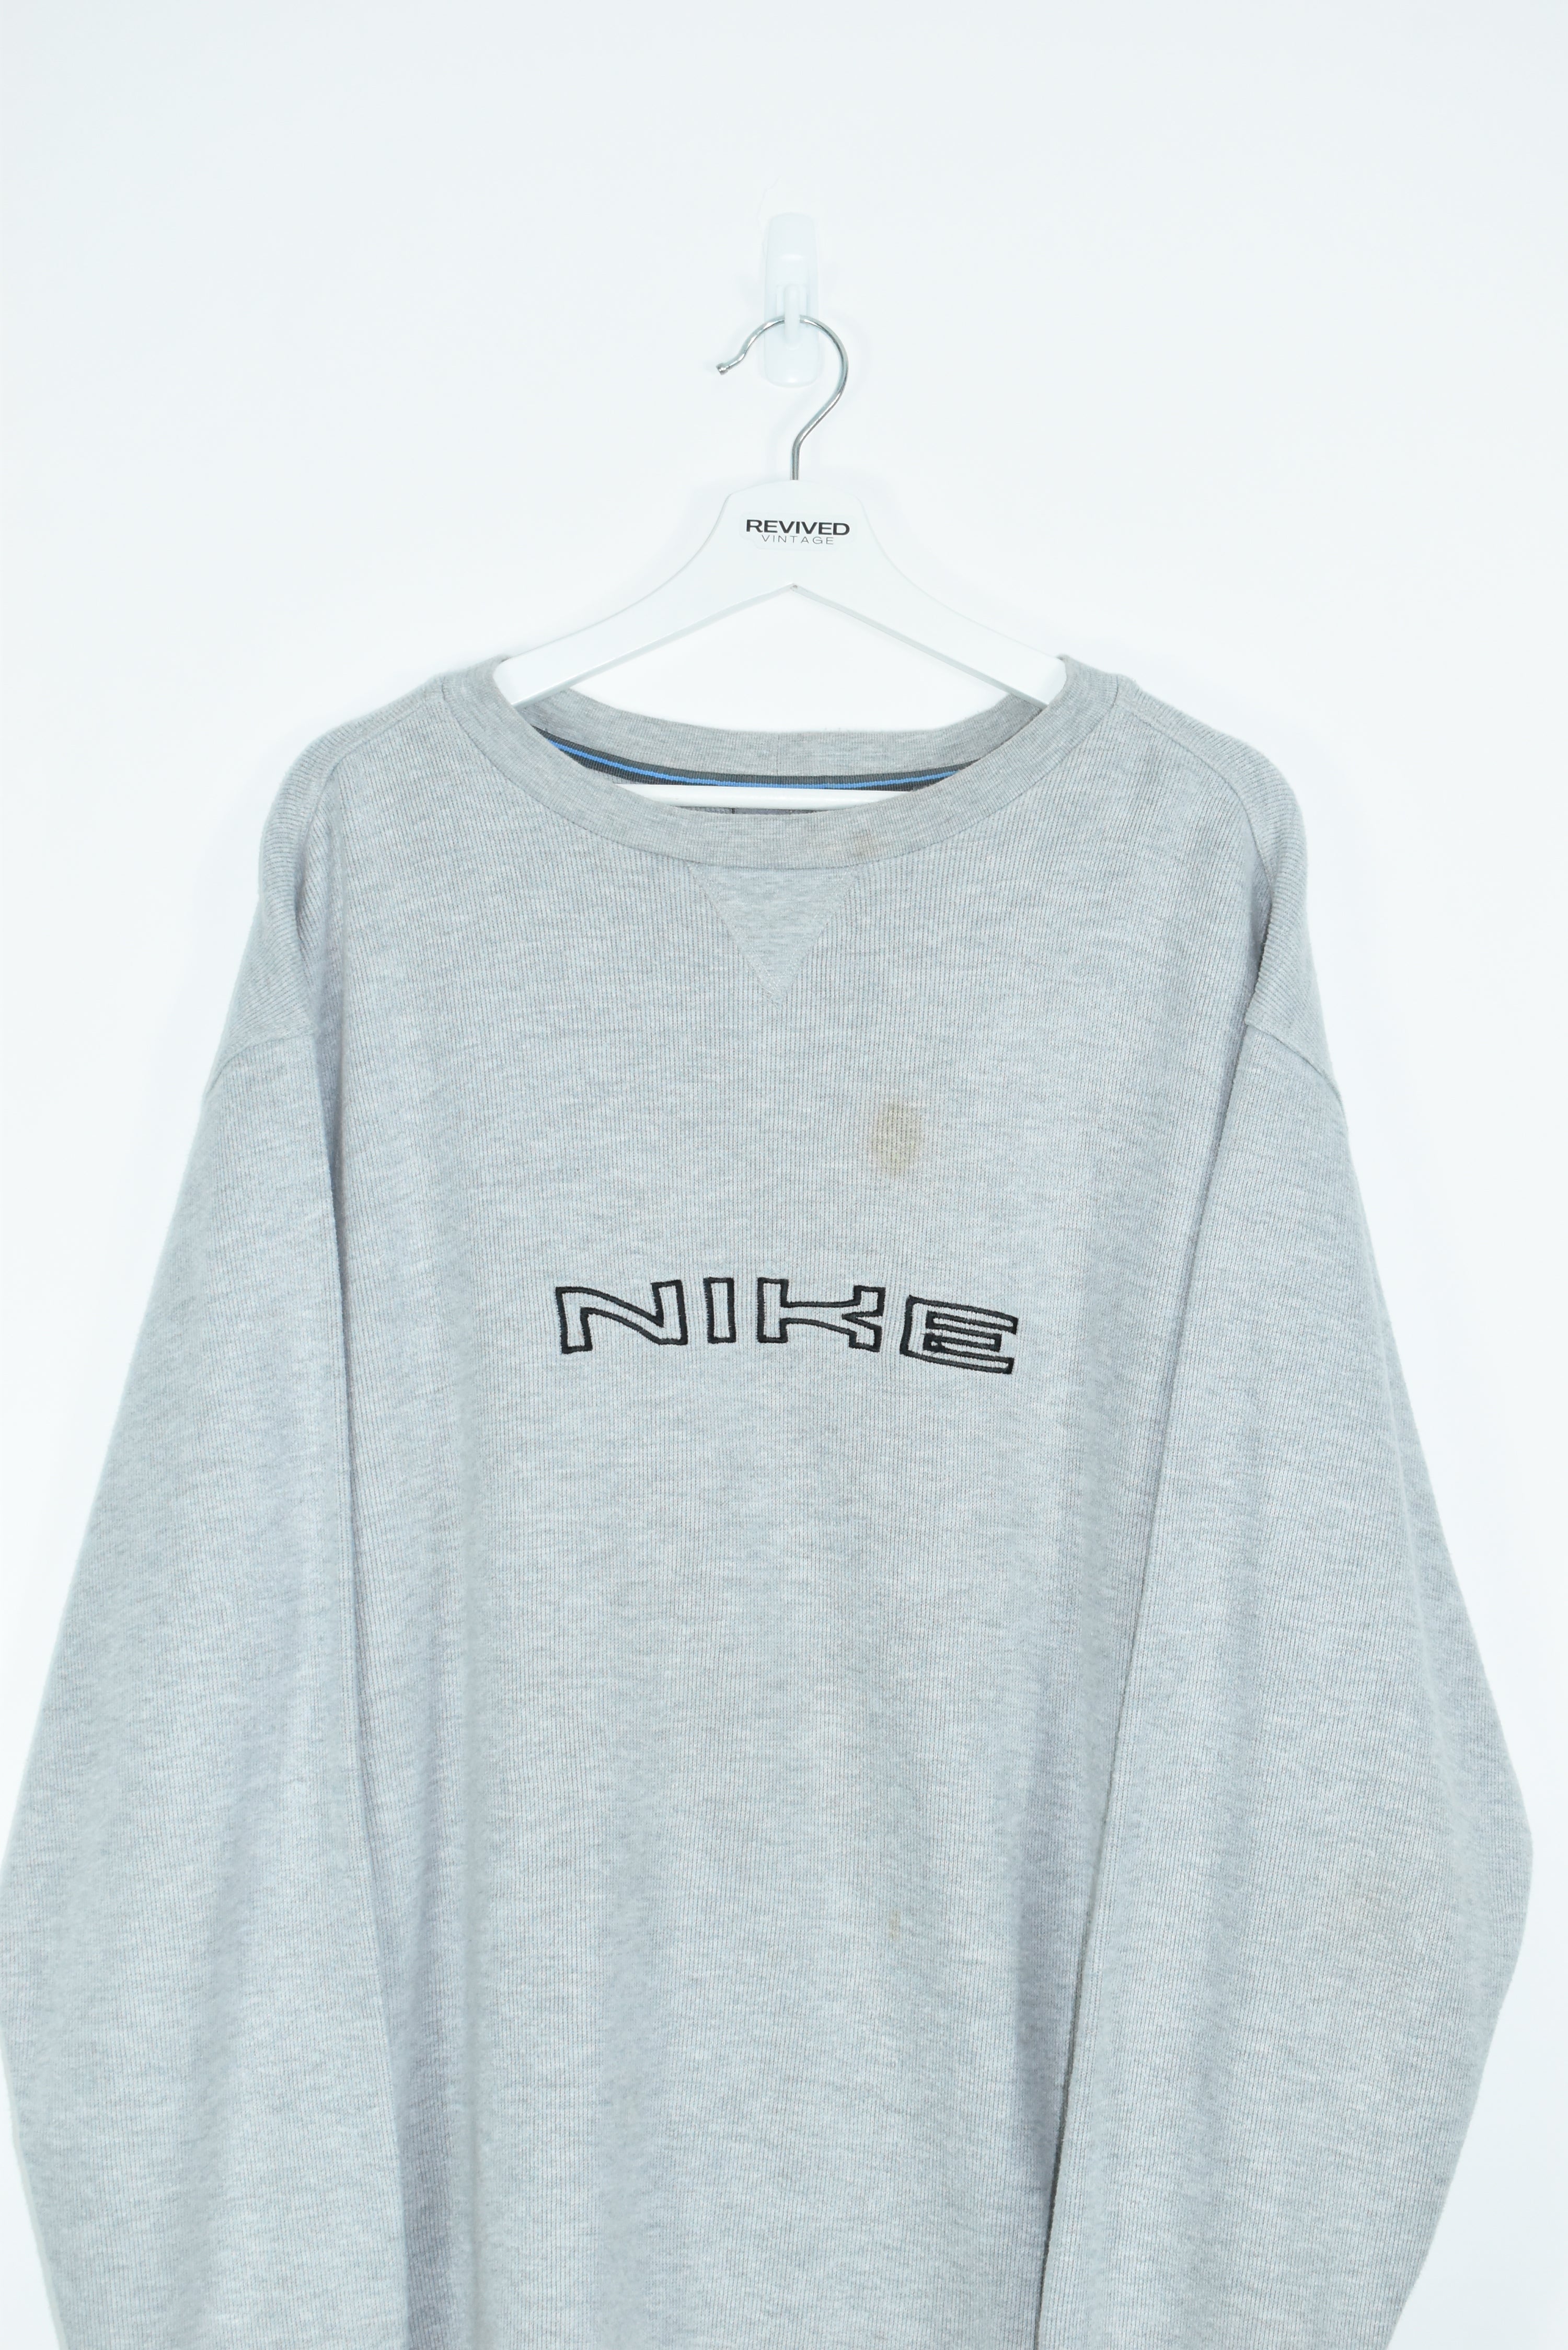 Vintage Nike Corduroy Embroidered Sweatshirt XXL